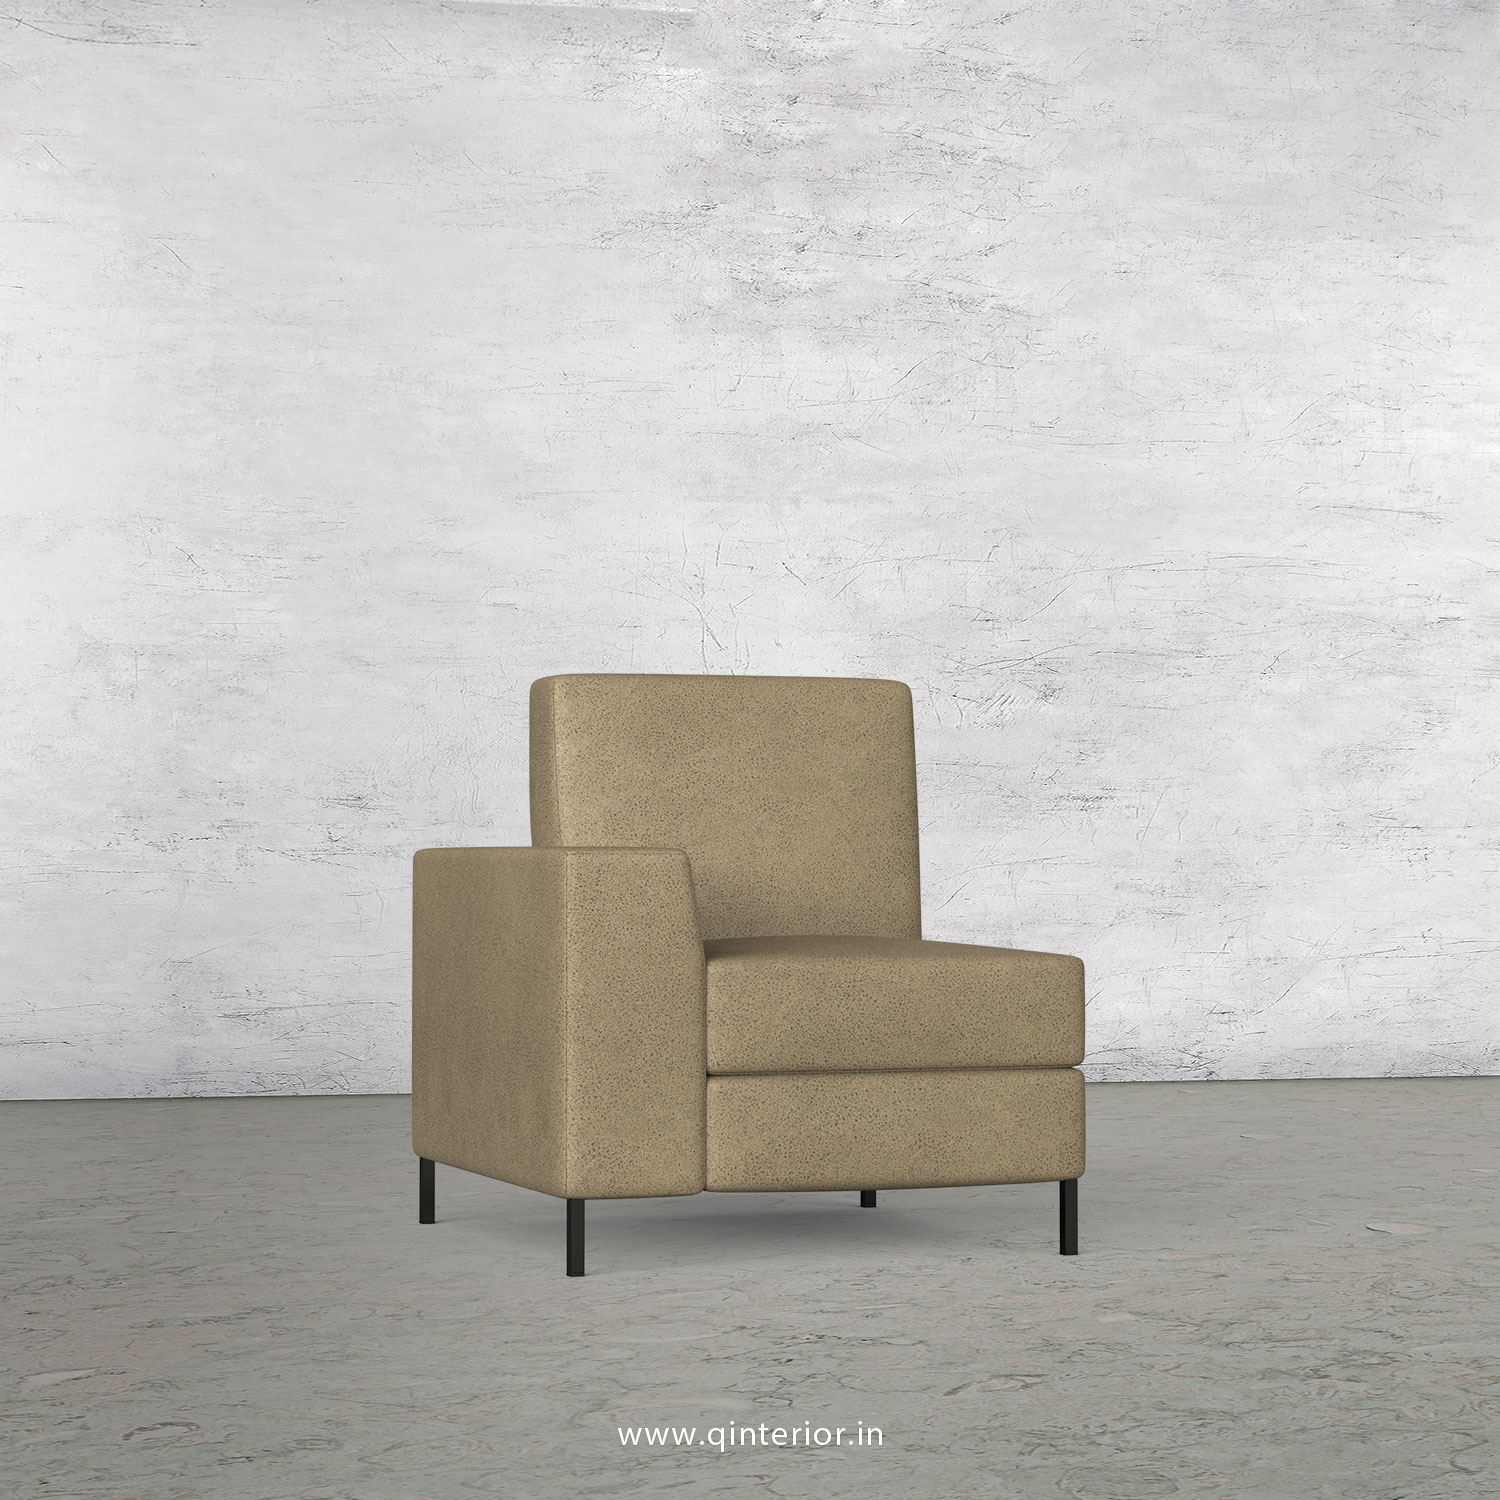 Viva 1 Seater Modular Sofa in Fab Leather Fabric - MSFA001 FL06